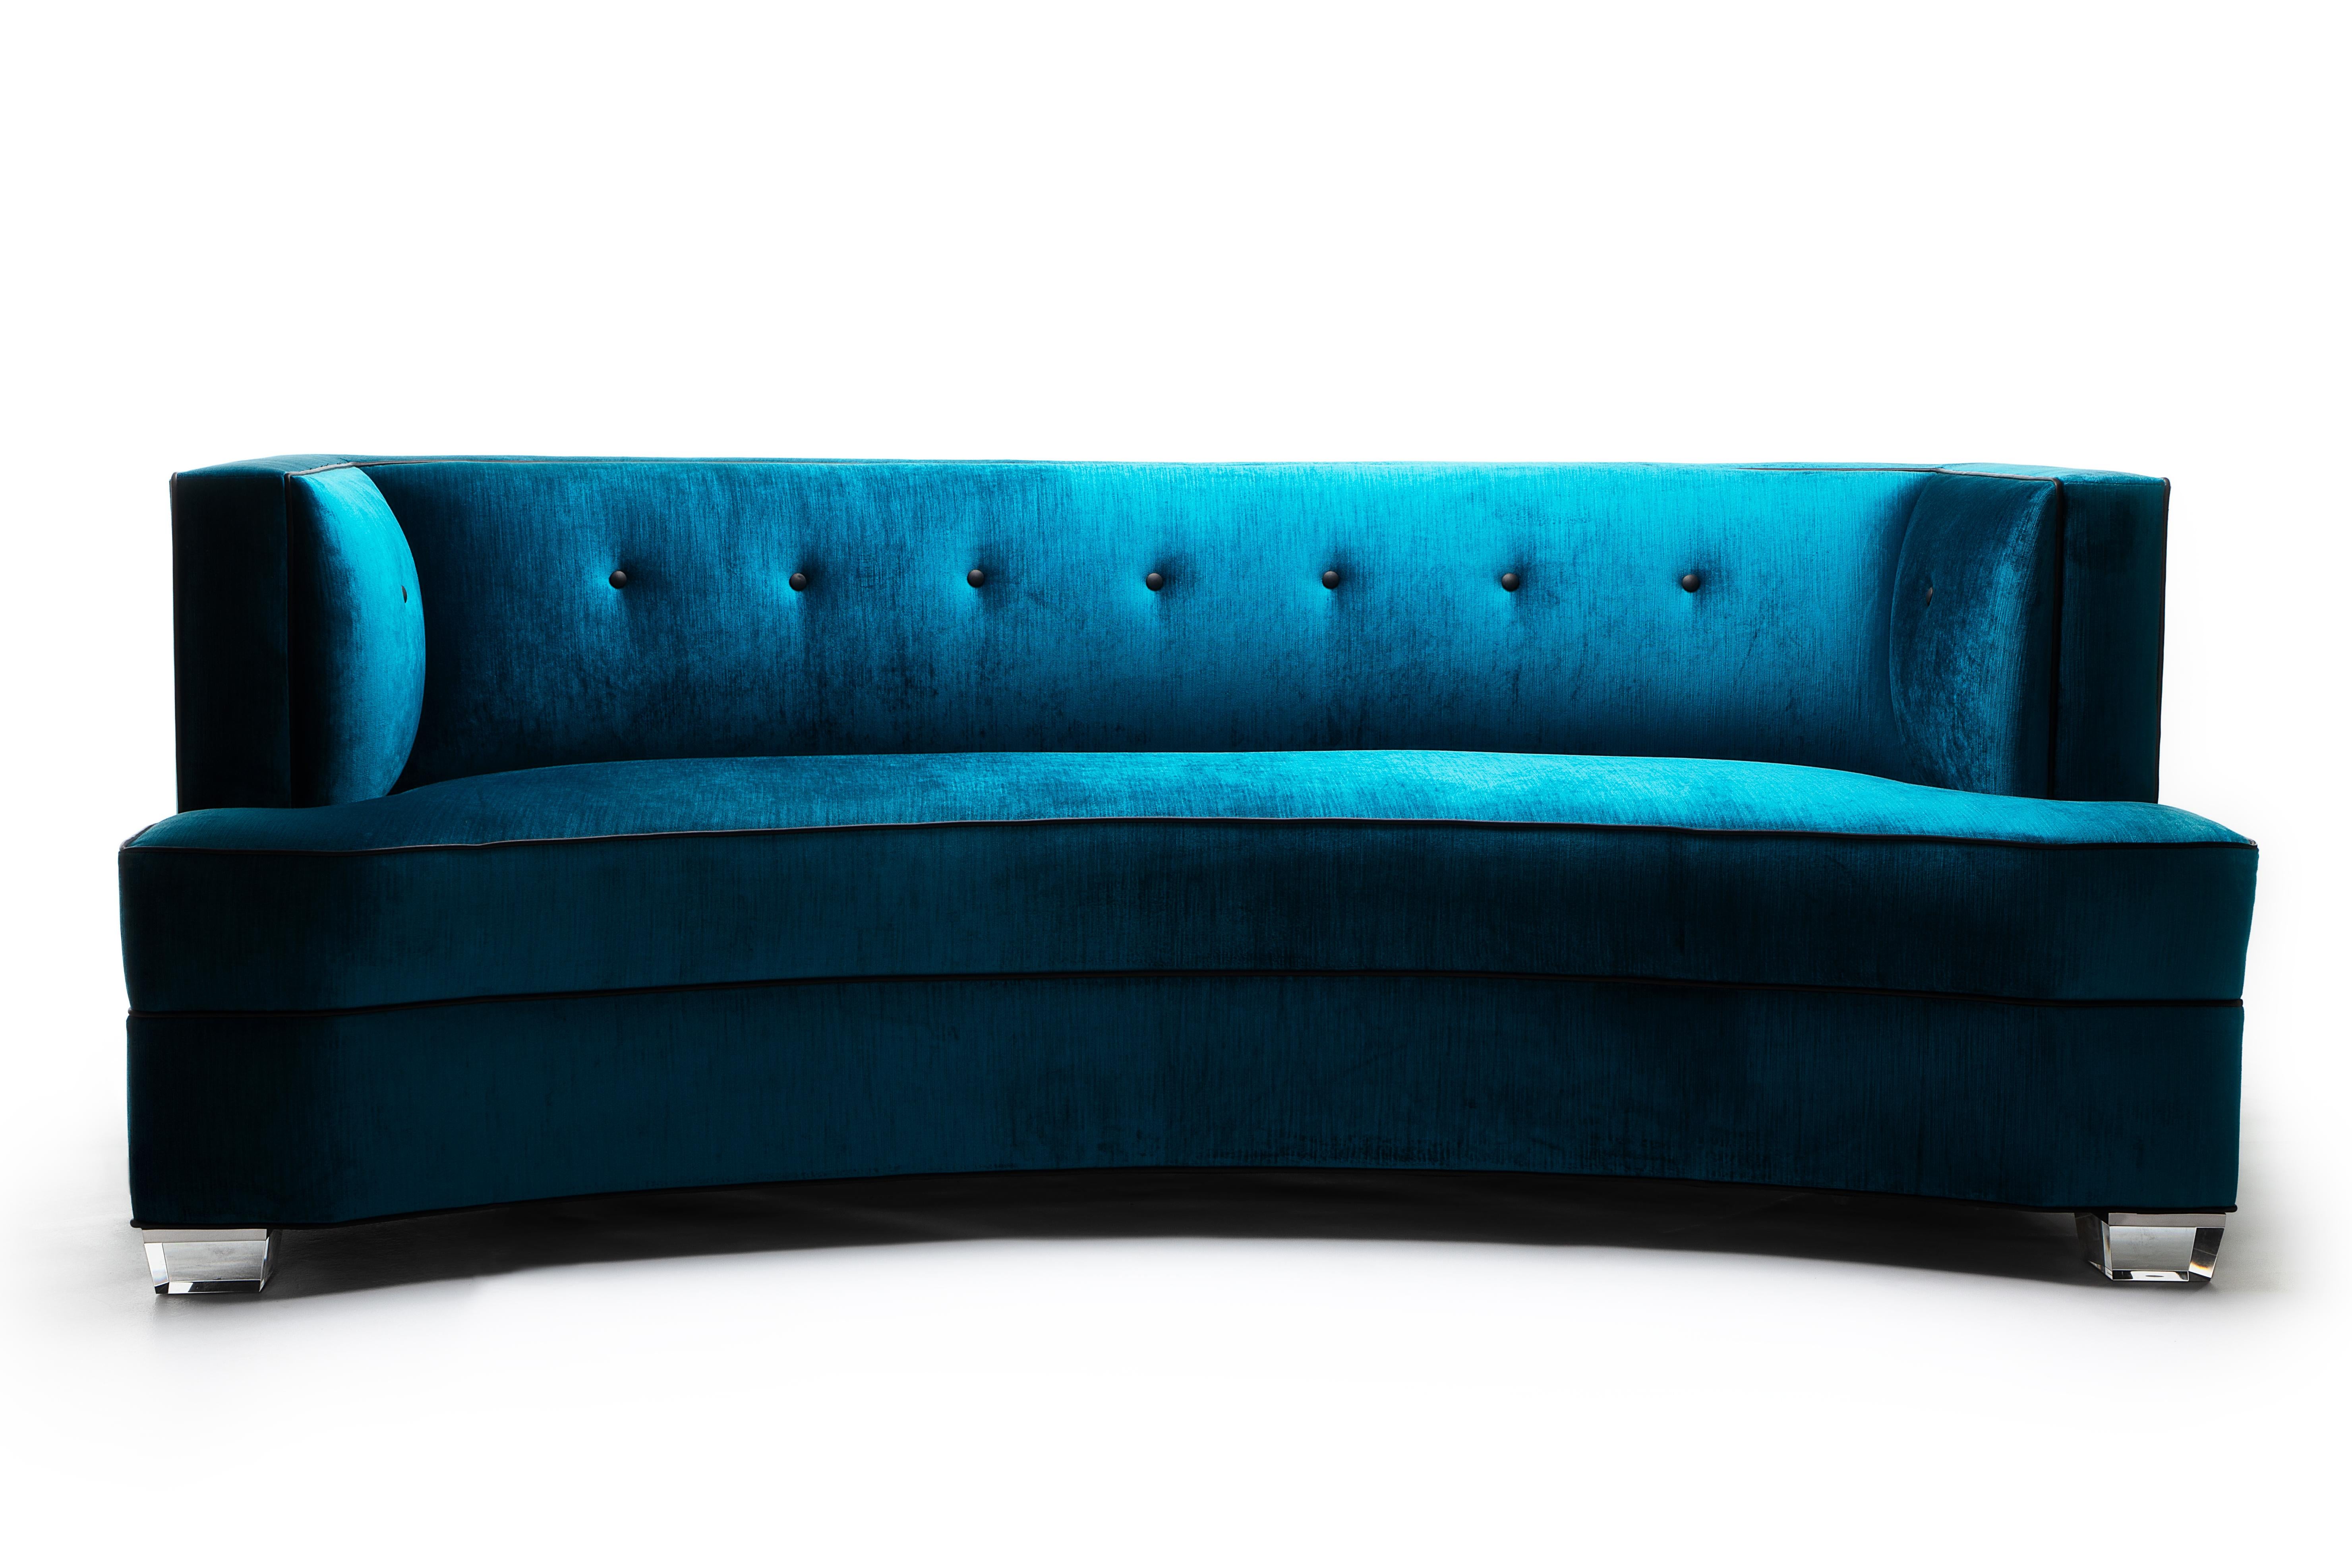 Art Deco Gabriella geschwungenes Sofa, handgefertigt von JAMES von Jimmy DeLaurentis